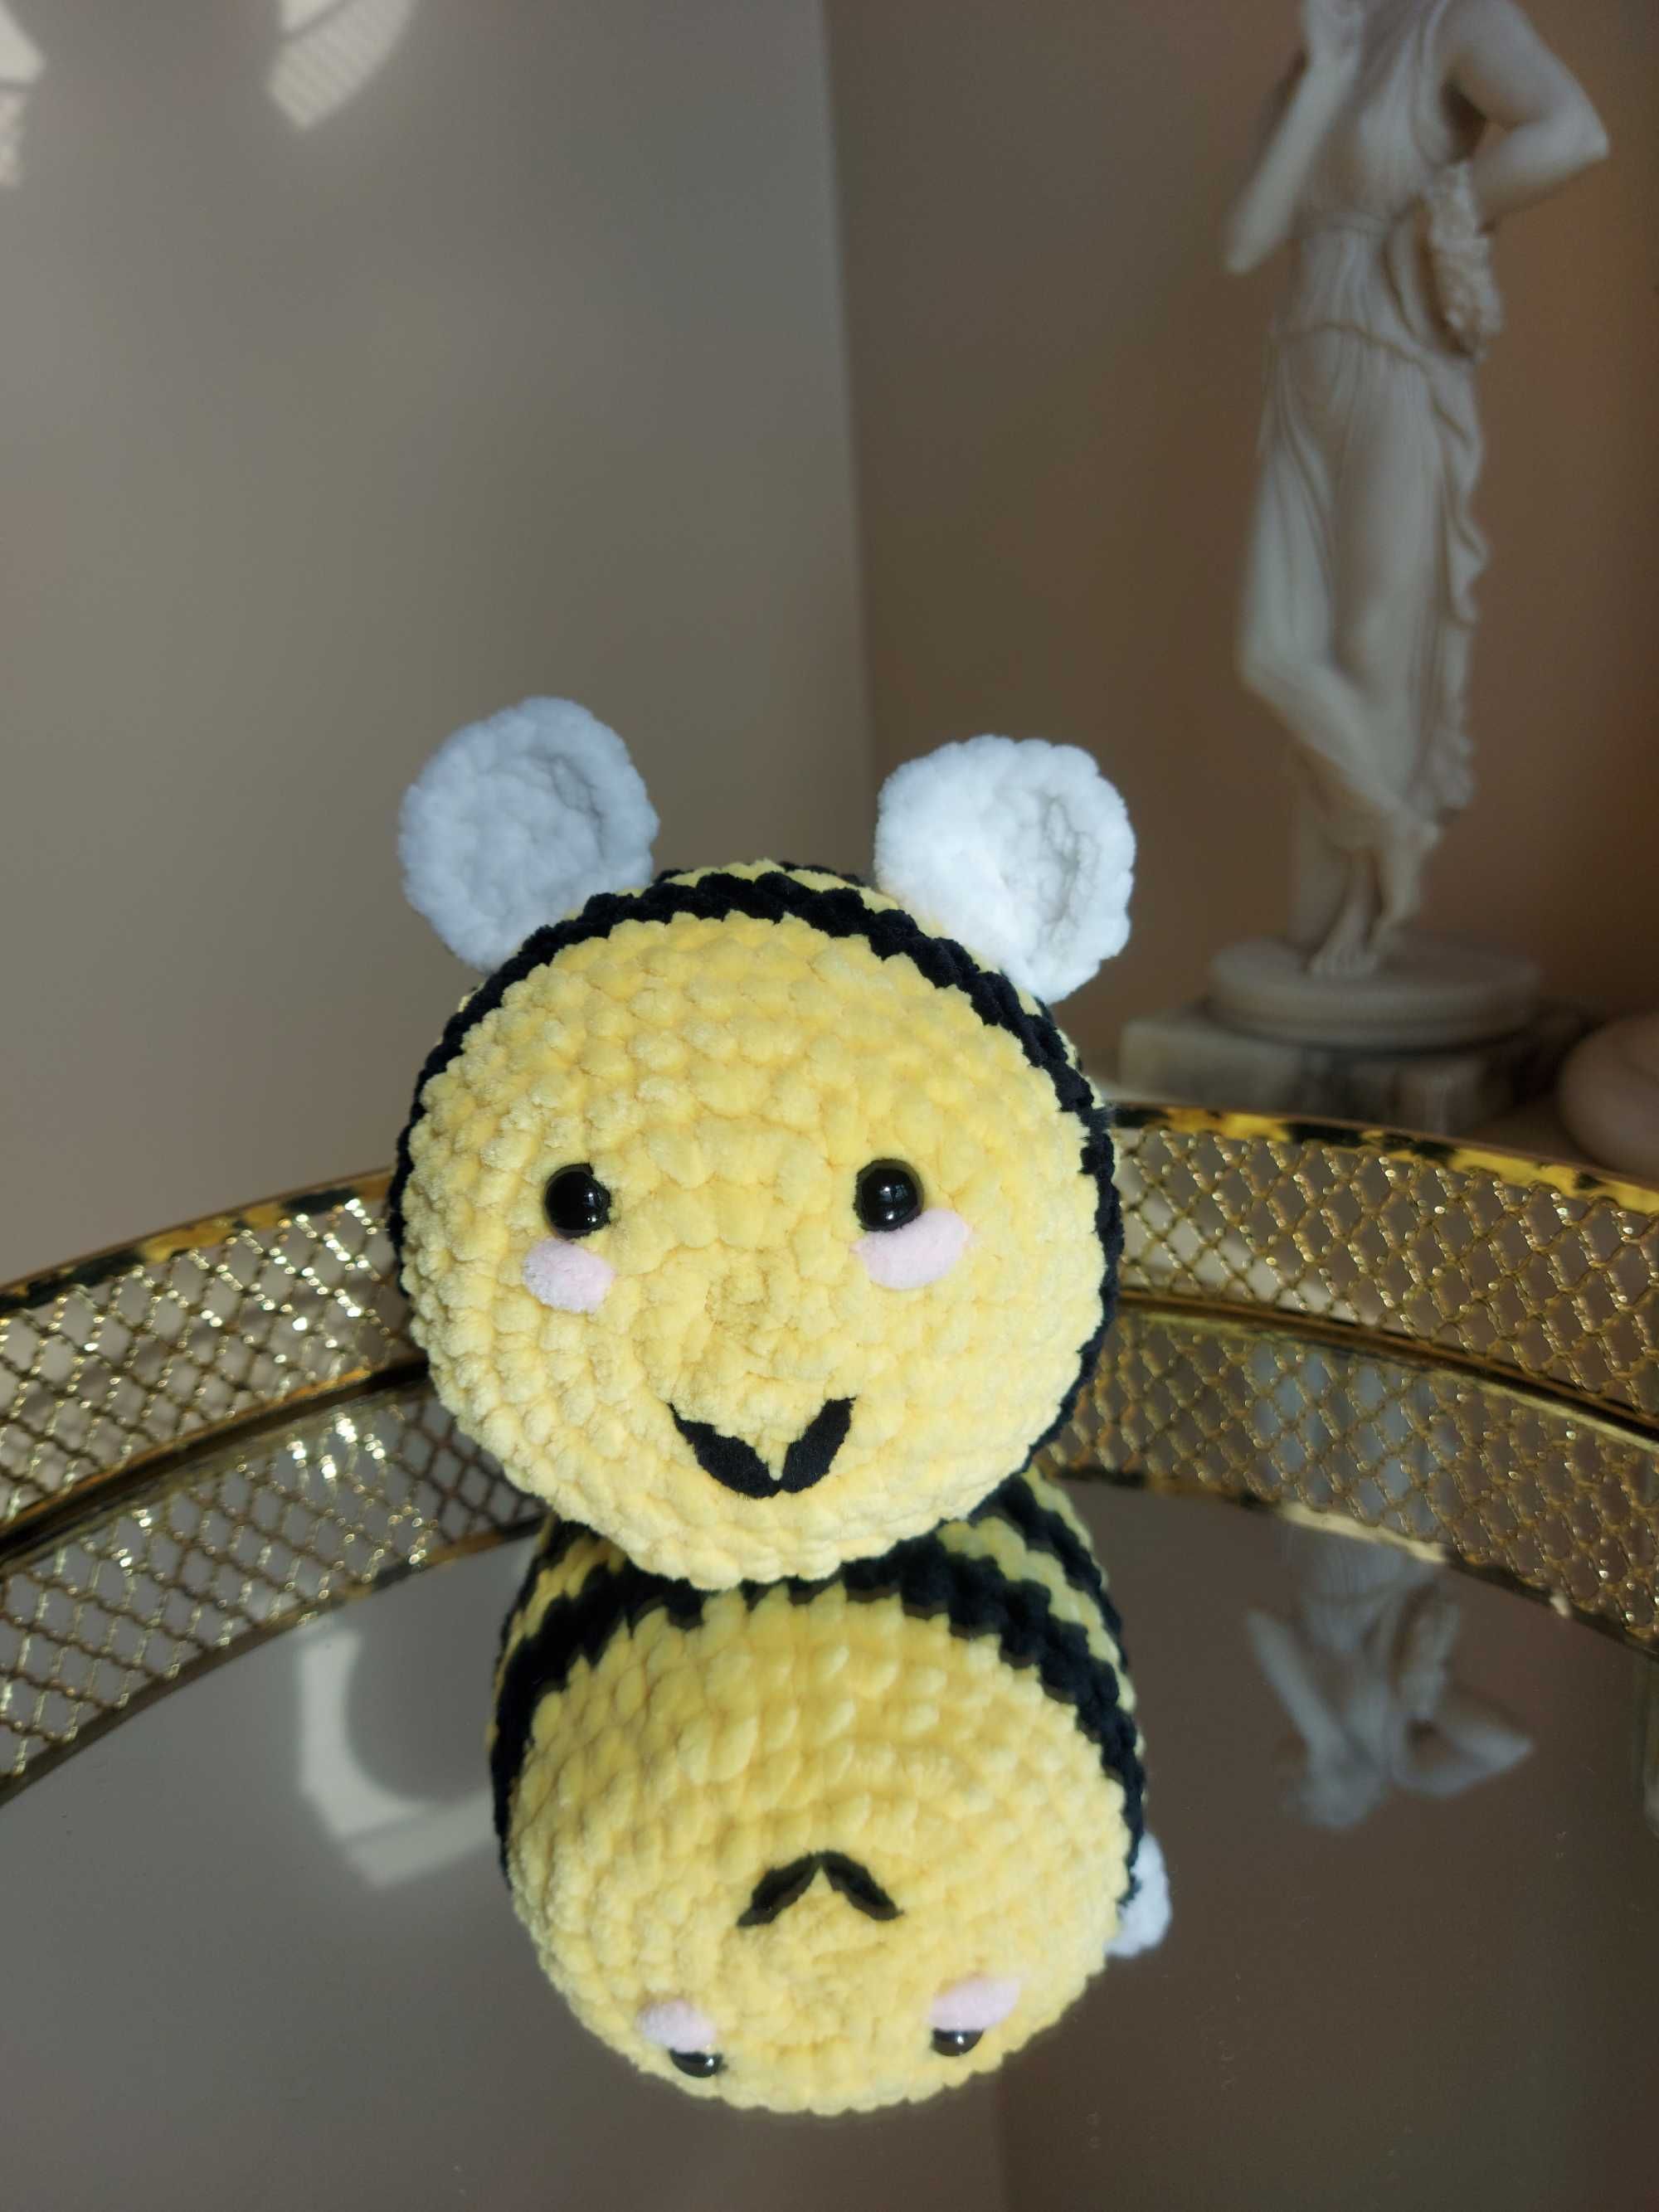 Pszczółka wykonana ręcznie na szydełku